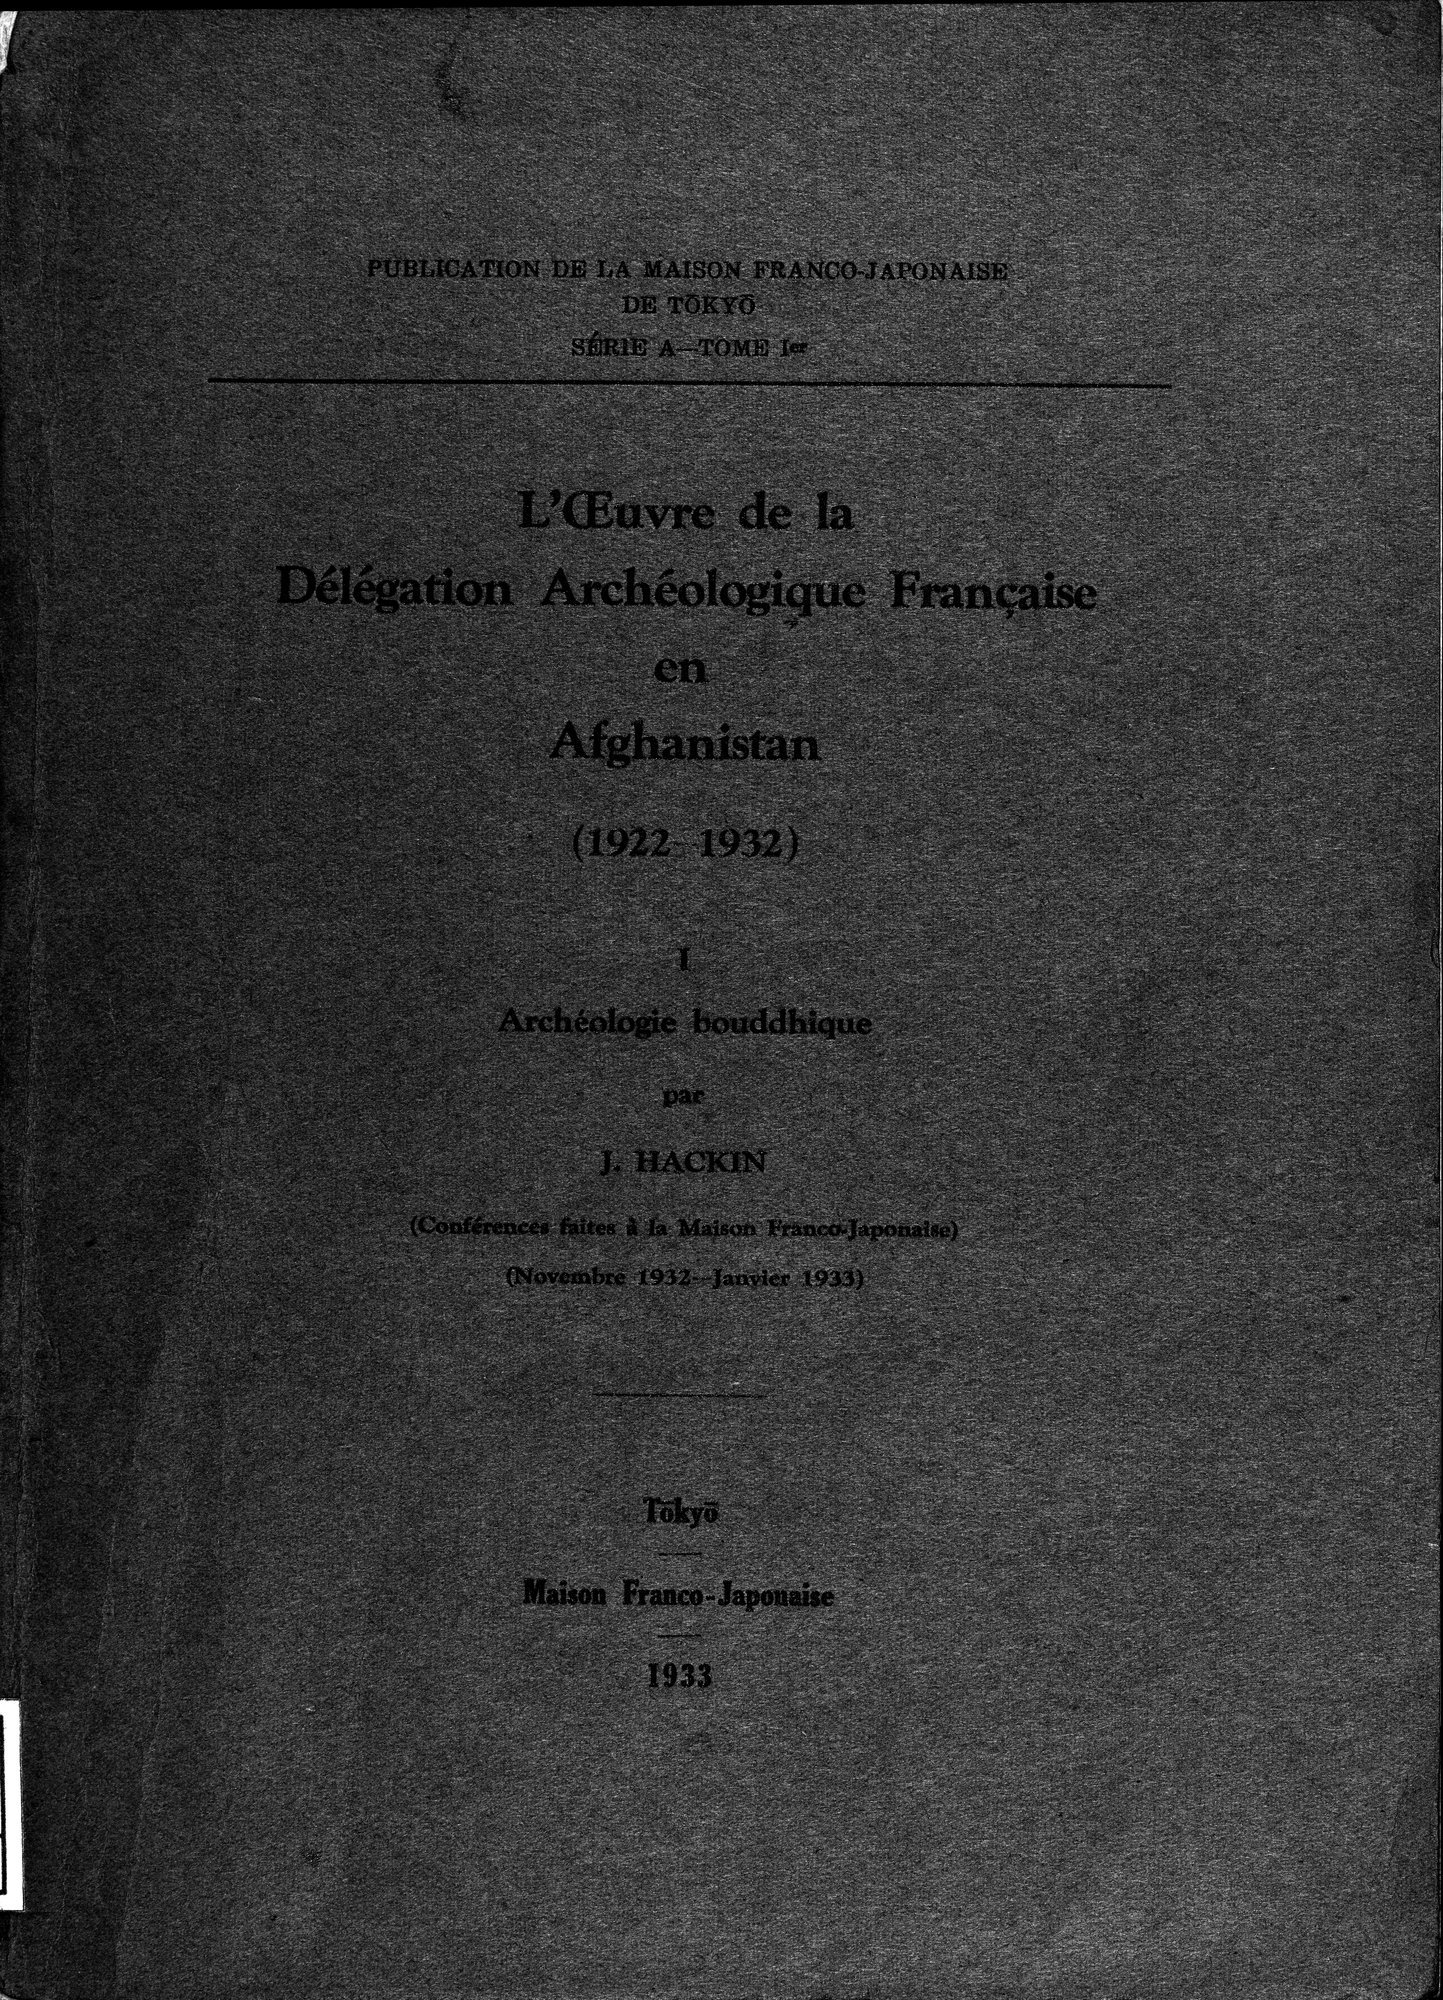 L'Œuvre de la Délégation Archéologique Française en Afghanistan (1922-1932) : vol.1 / Page 1 (Grayscale High Resolution Image)